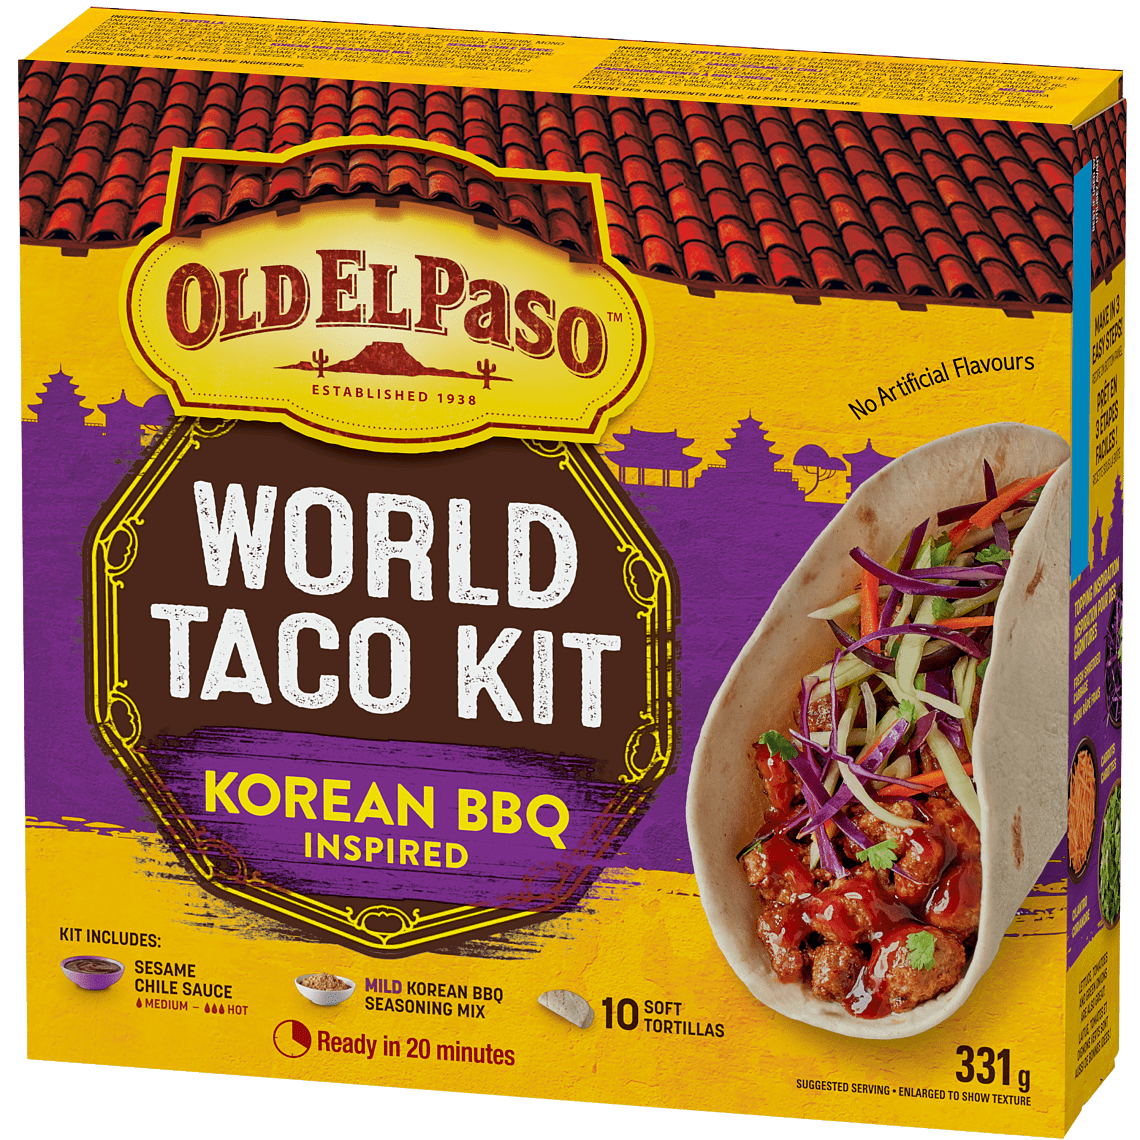 World Taco Kit Korean BBQ Inspired - Old El Paso